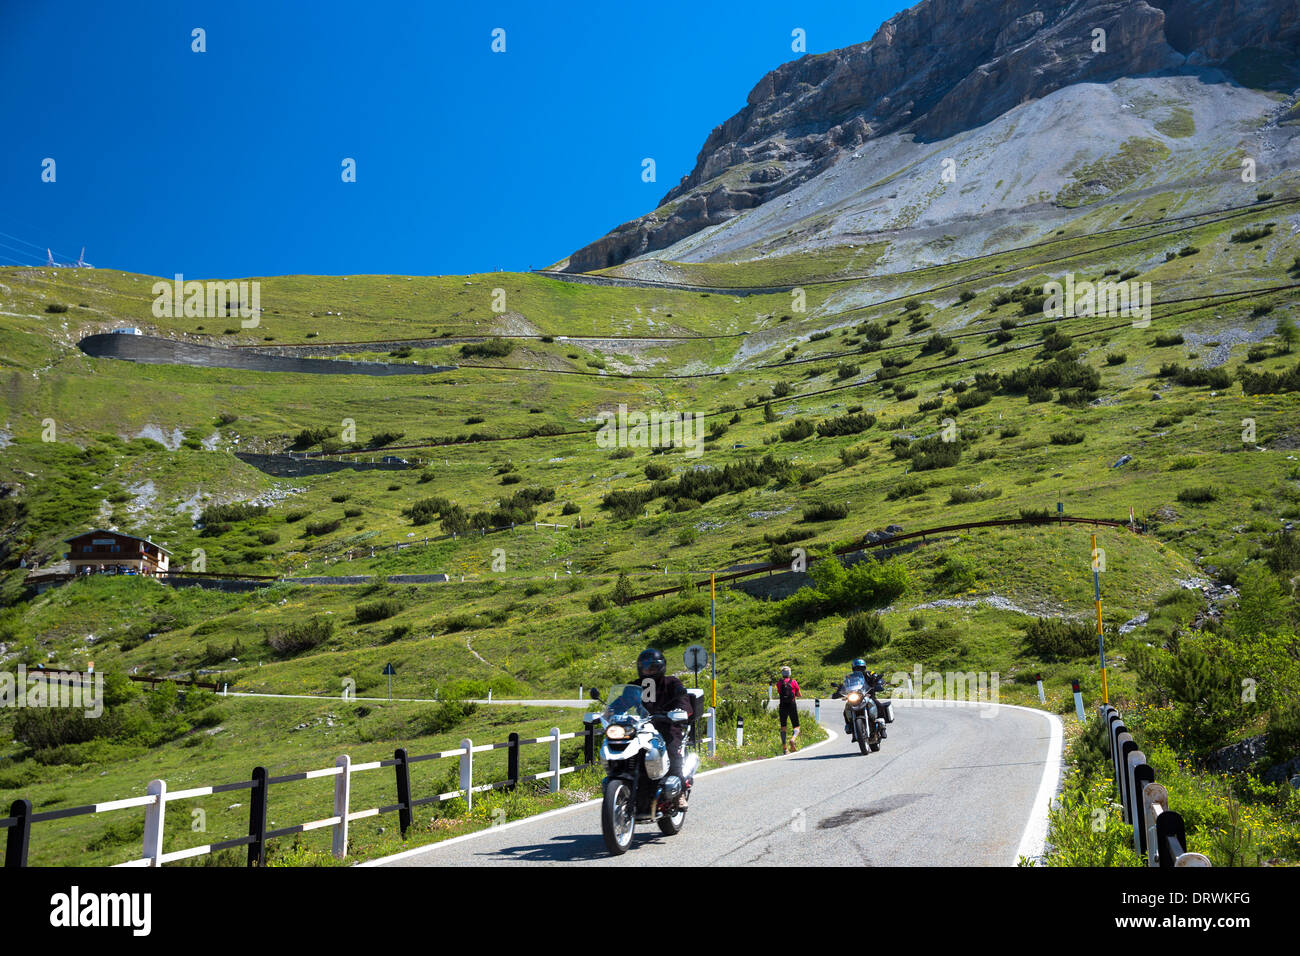 Motocicletas y Walker en Stelvio Pass, Passo dello Stelvio, Stilfser Joch, sobre la ruta Trafoi a Bormio, en los Alpes, en el norte de Italia Foto de stock